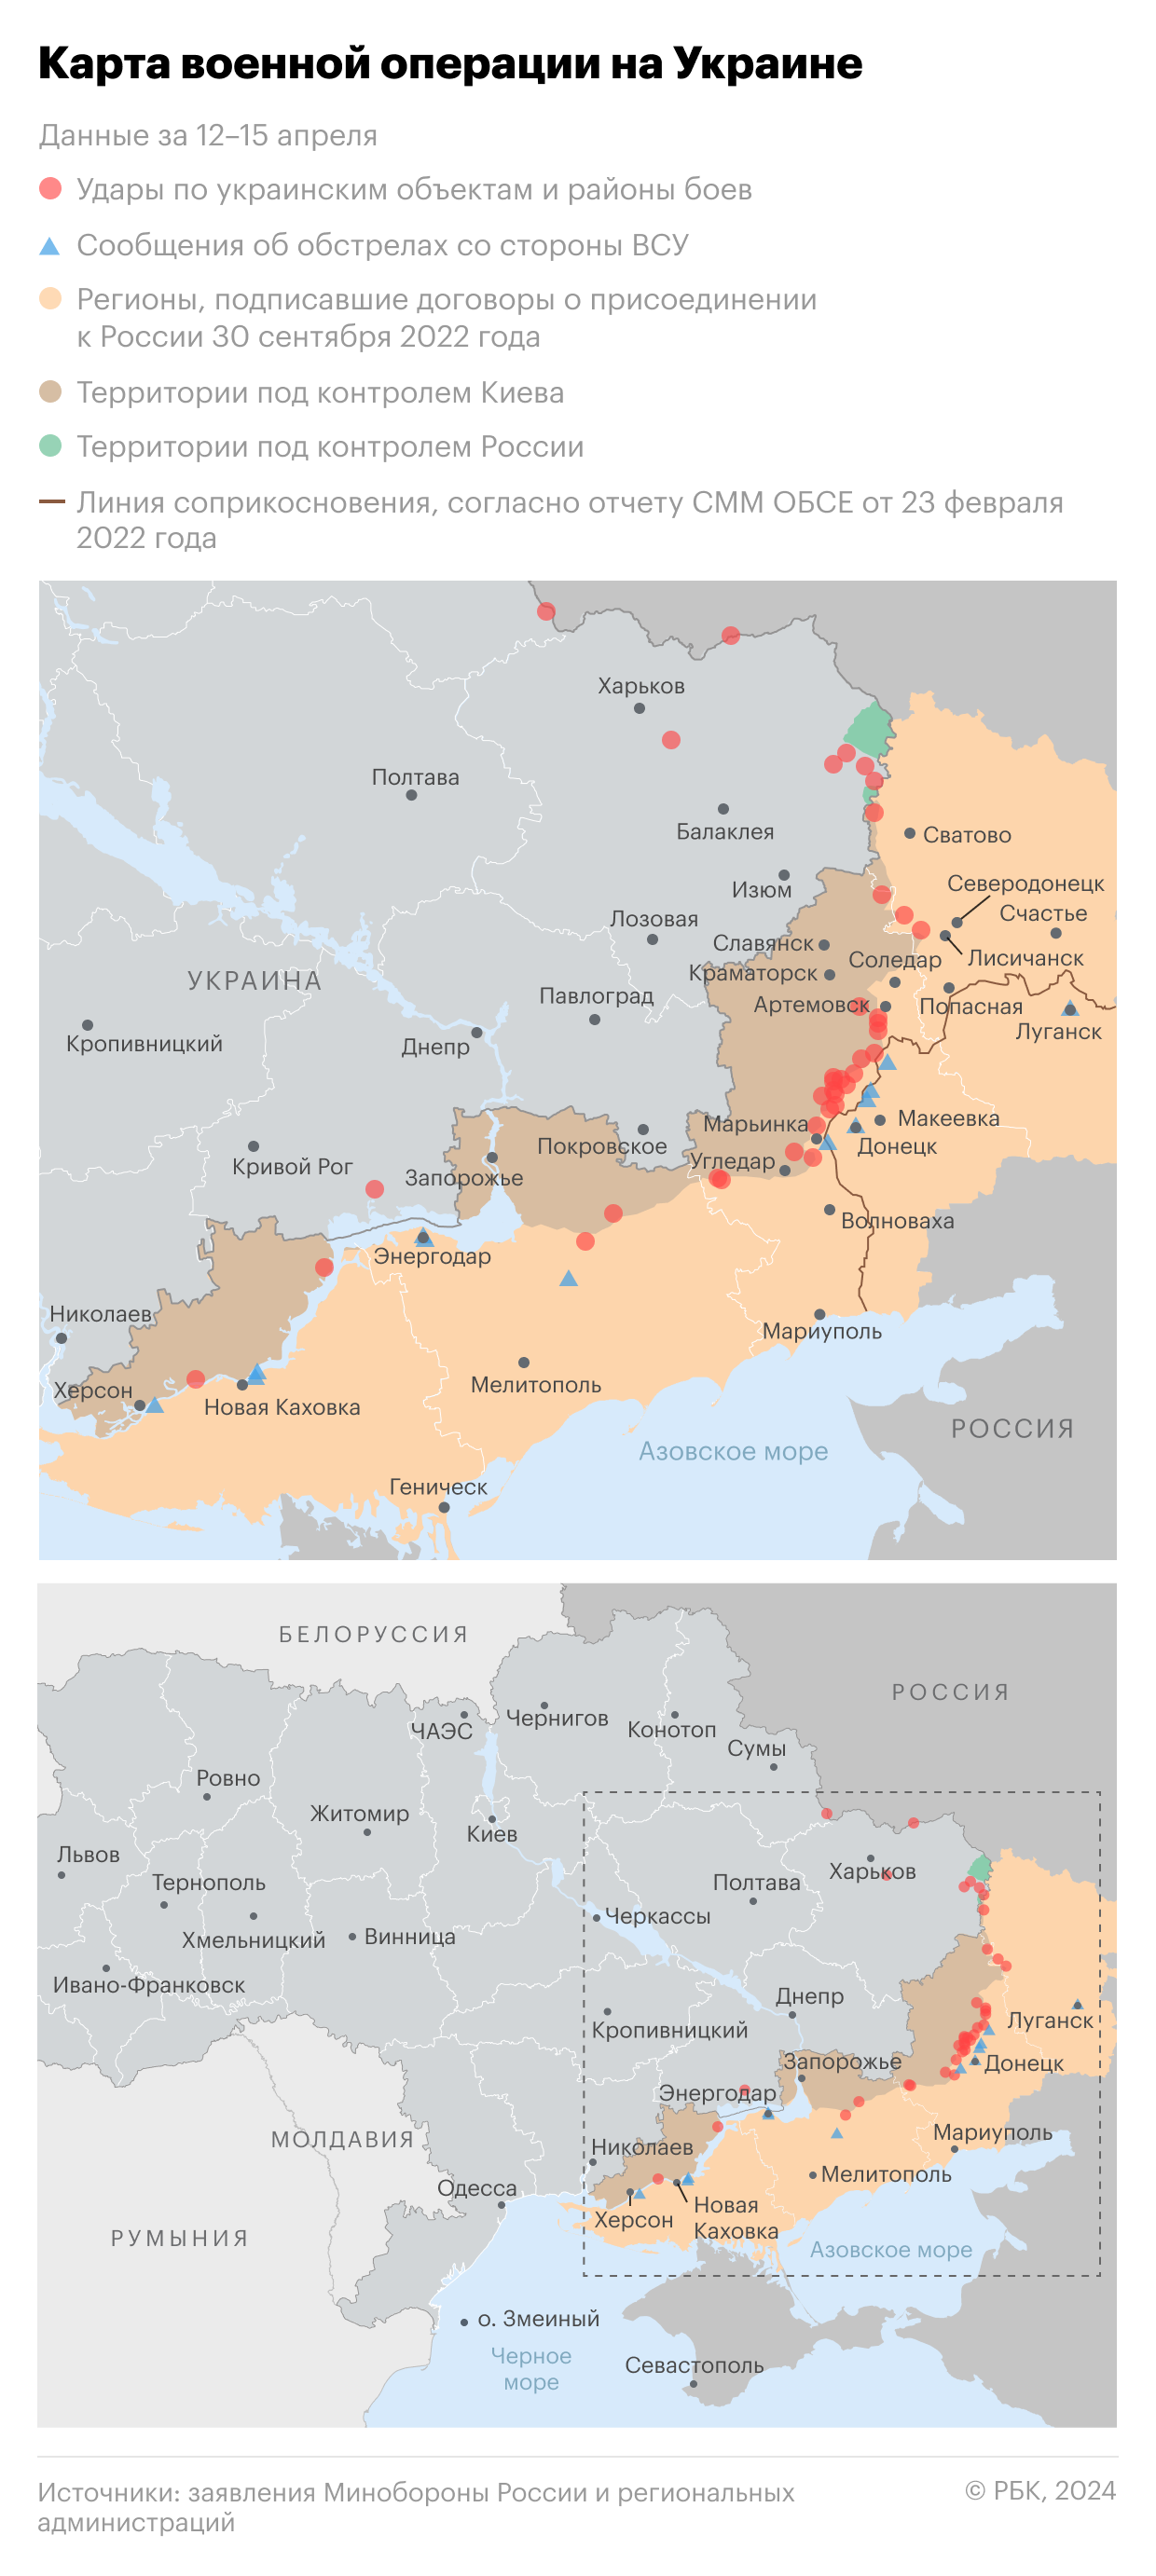 Военная операция на Украине. Карта на 10 апреля